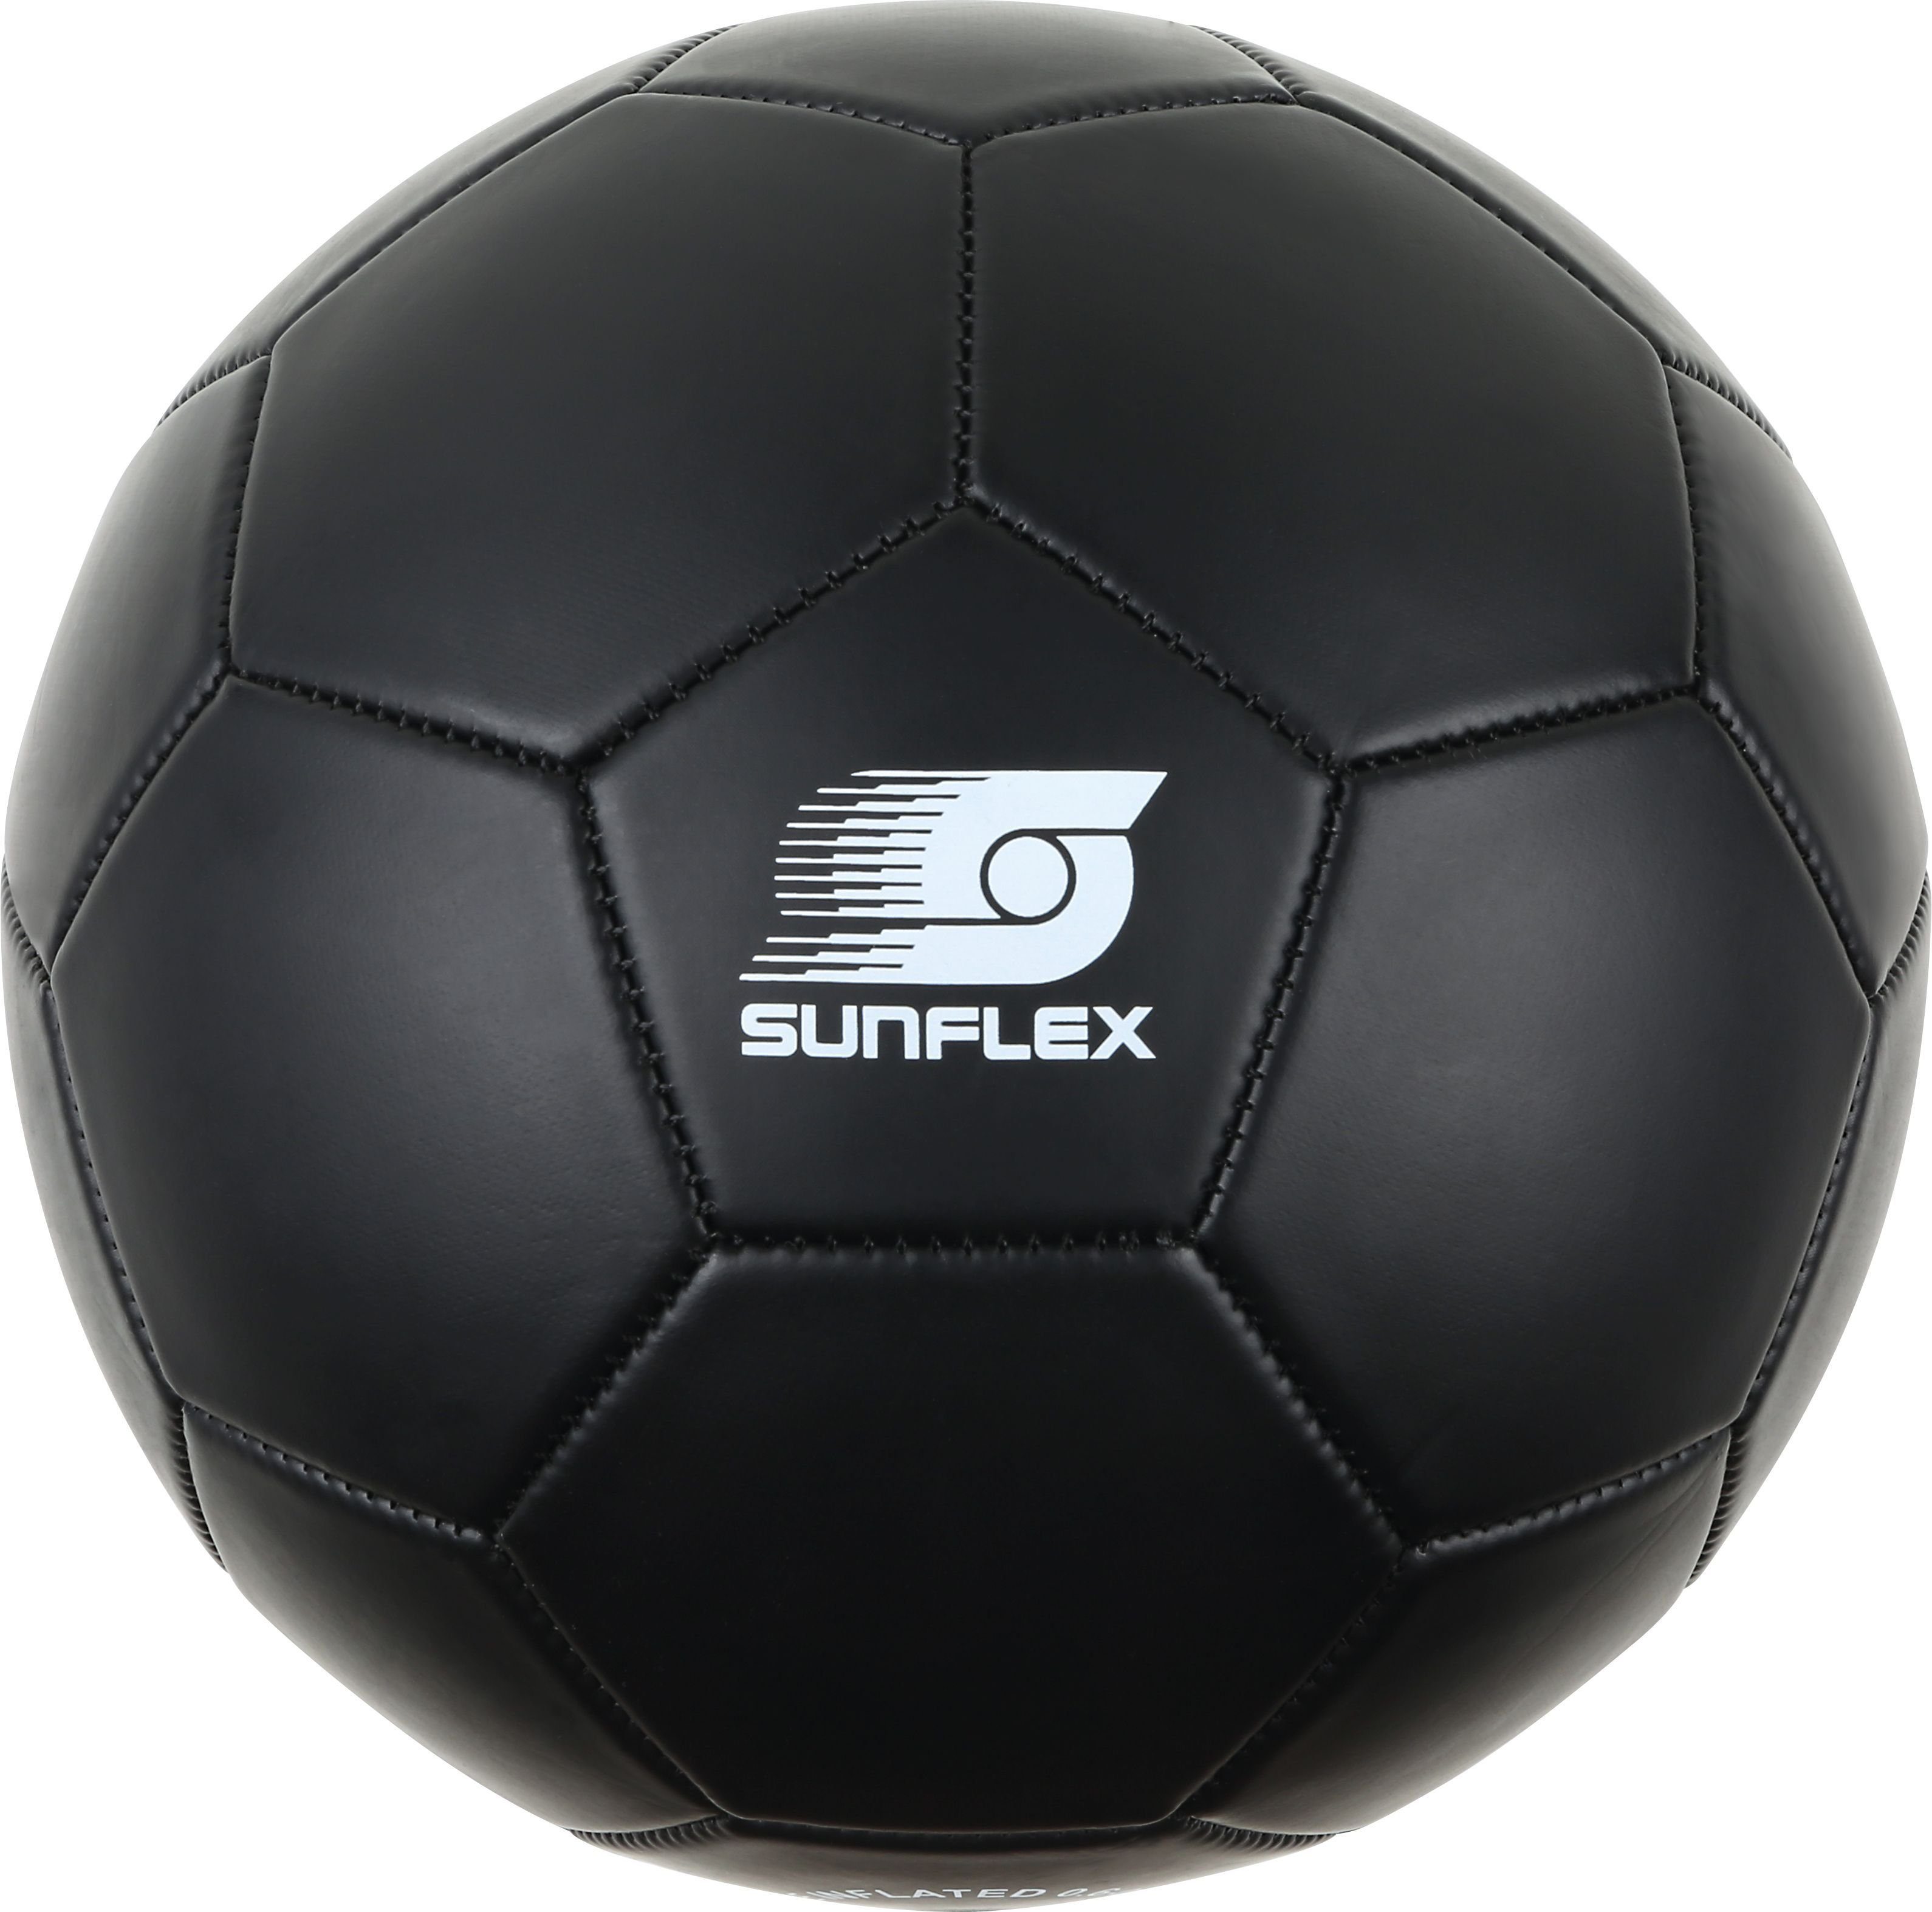 Sunflex Fußball Soccerball Black, Fußball Beachball Funball Fangen Werfen